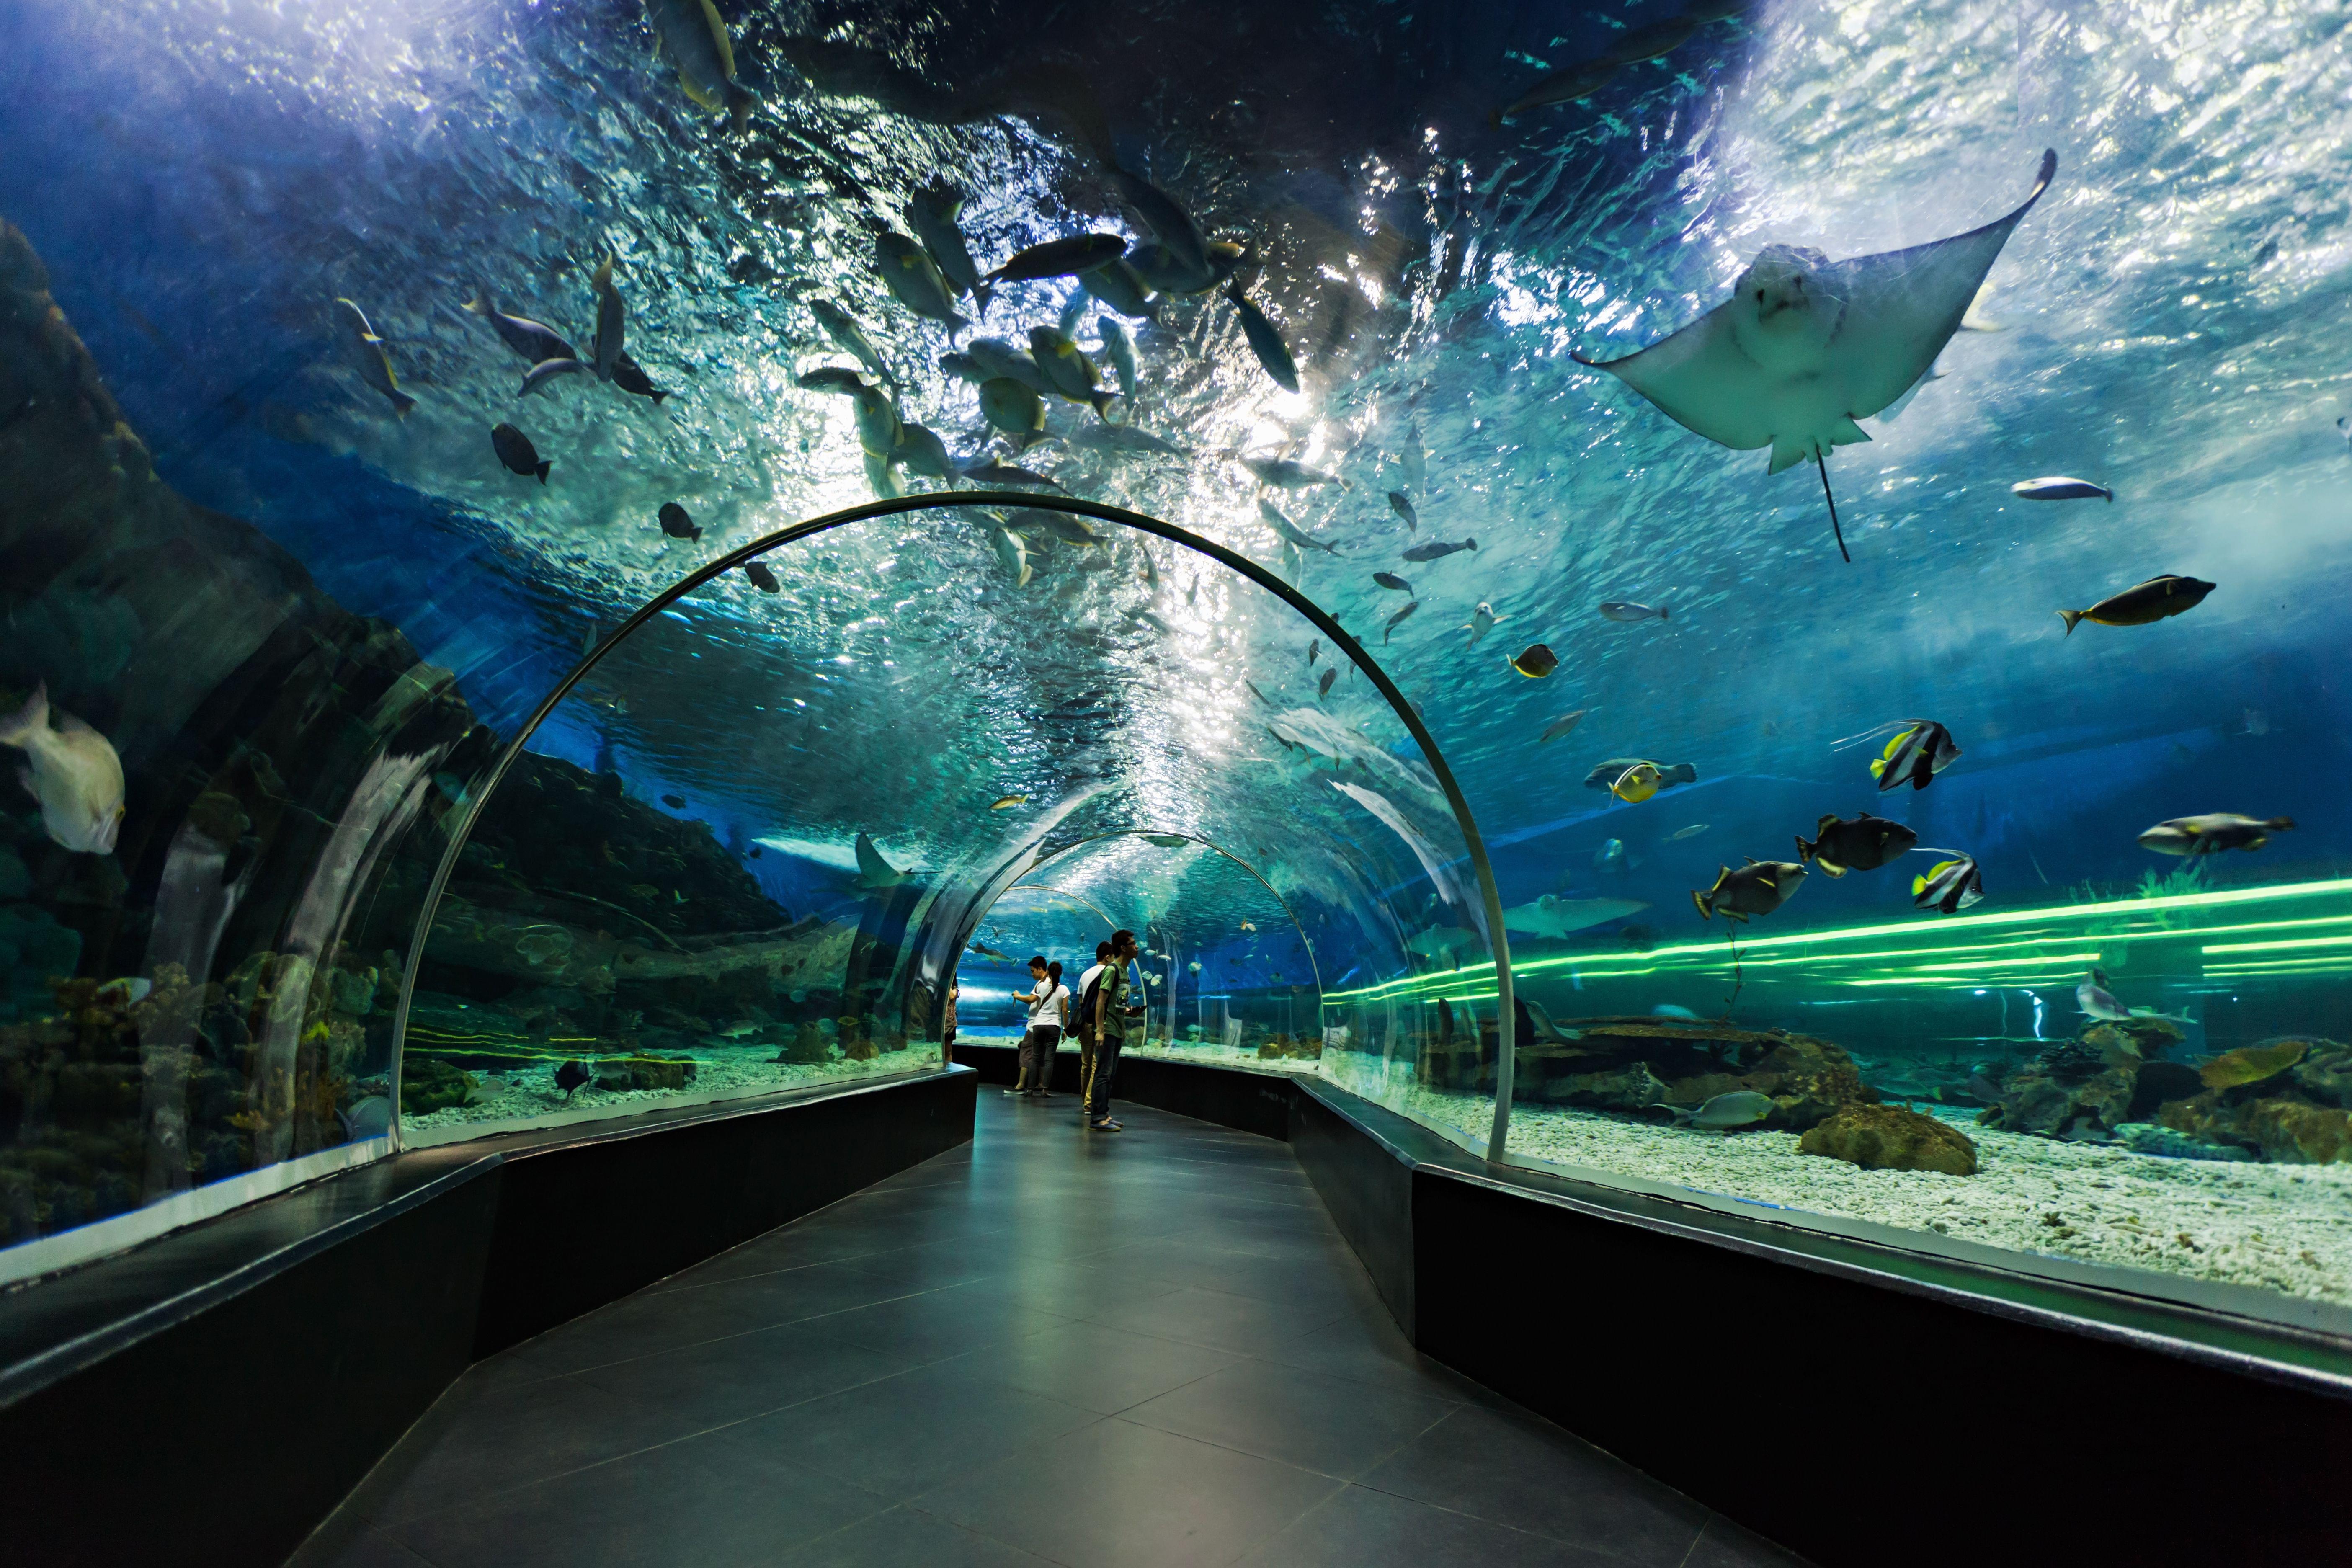 About Dubai Aquarium